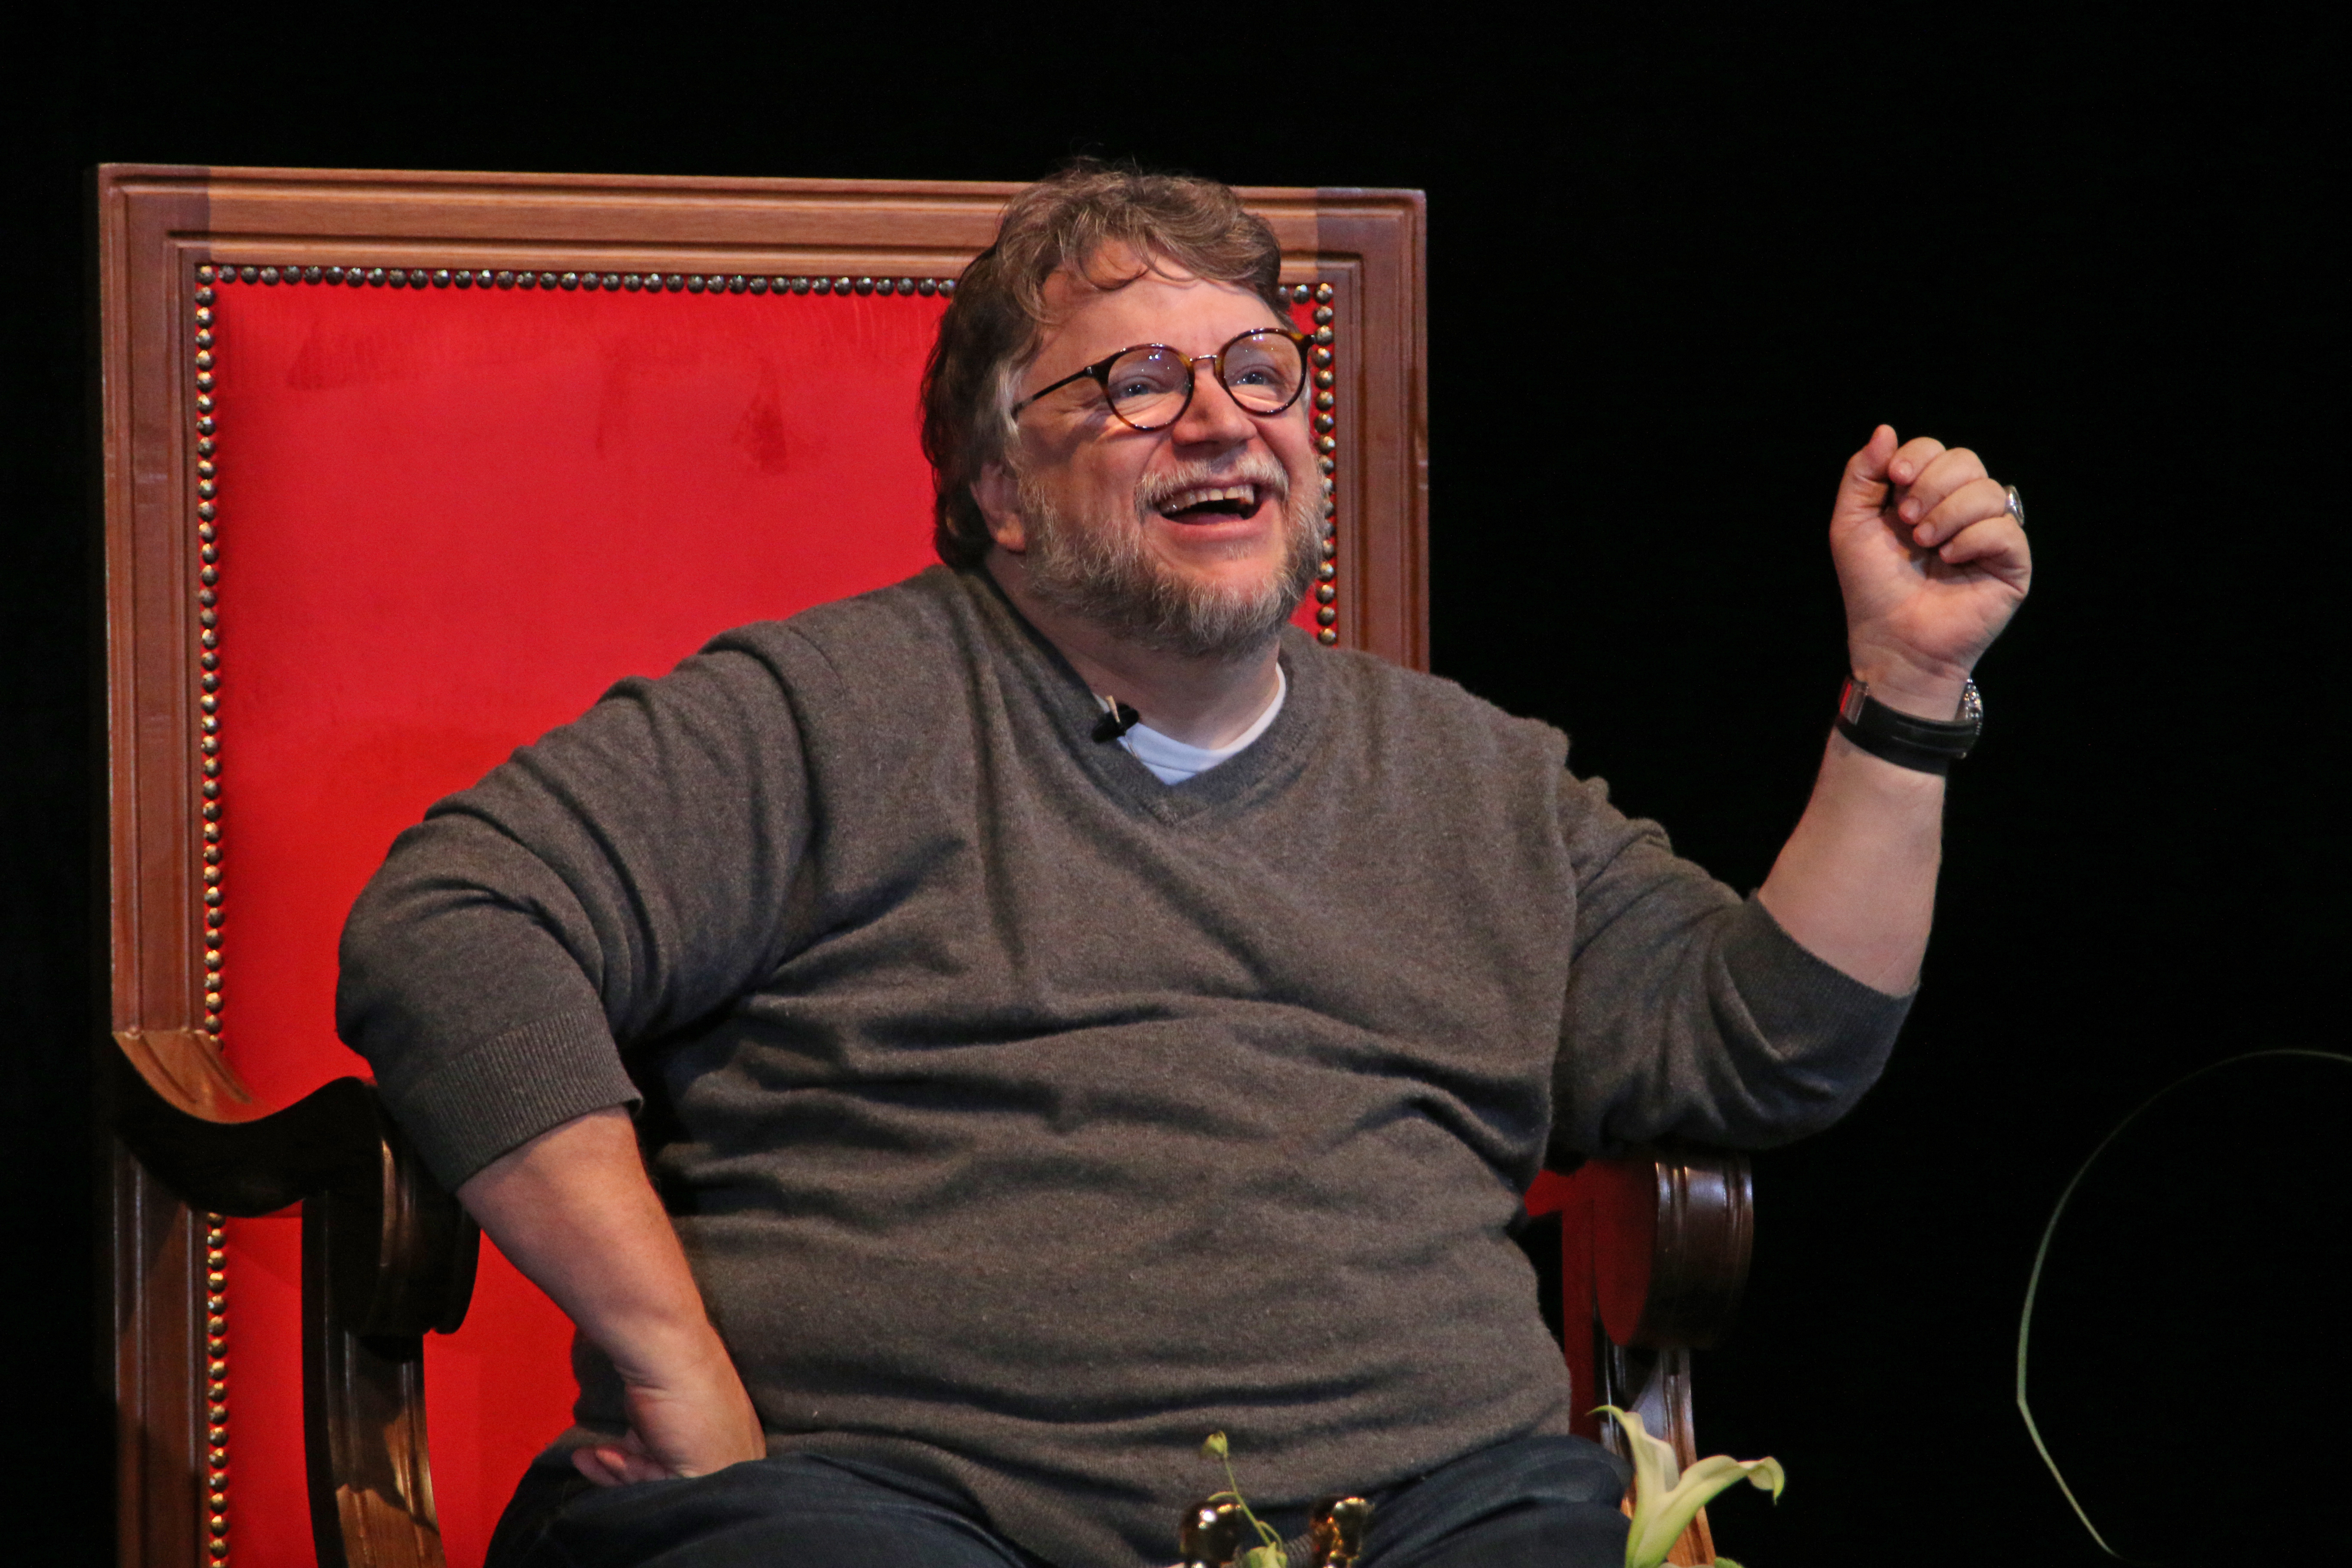 Algunas de las últimas películas más aclamadas de Del Toro en el extranjero ha sido "La forma del agua", la cual inclusive estuvo nominada a decenas de premios, entre ellos ganó cuatro Óscar (Foto: Cuartoscuro)
